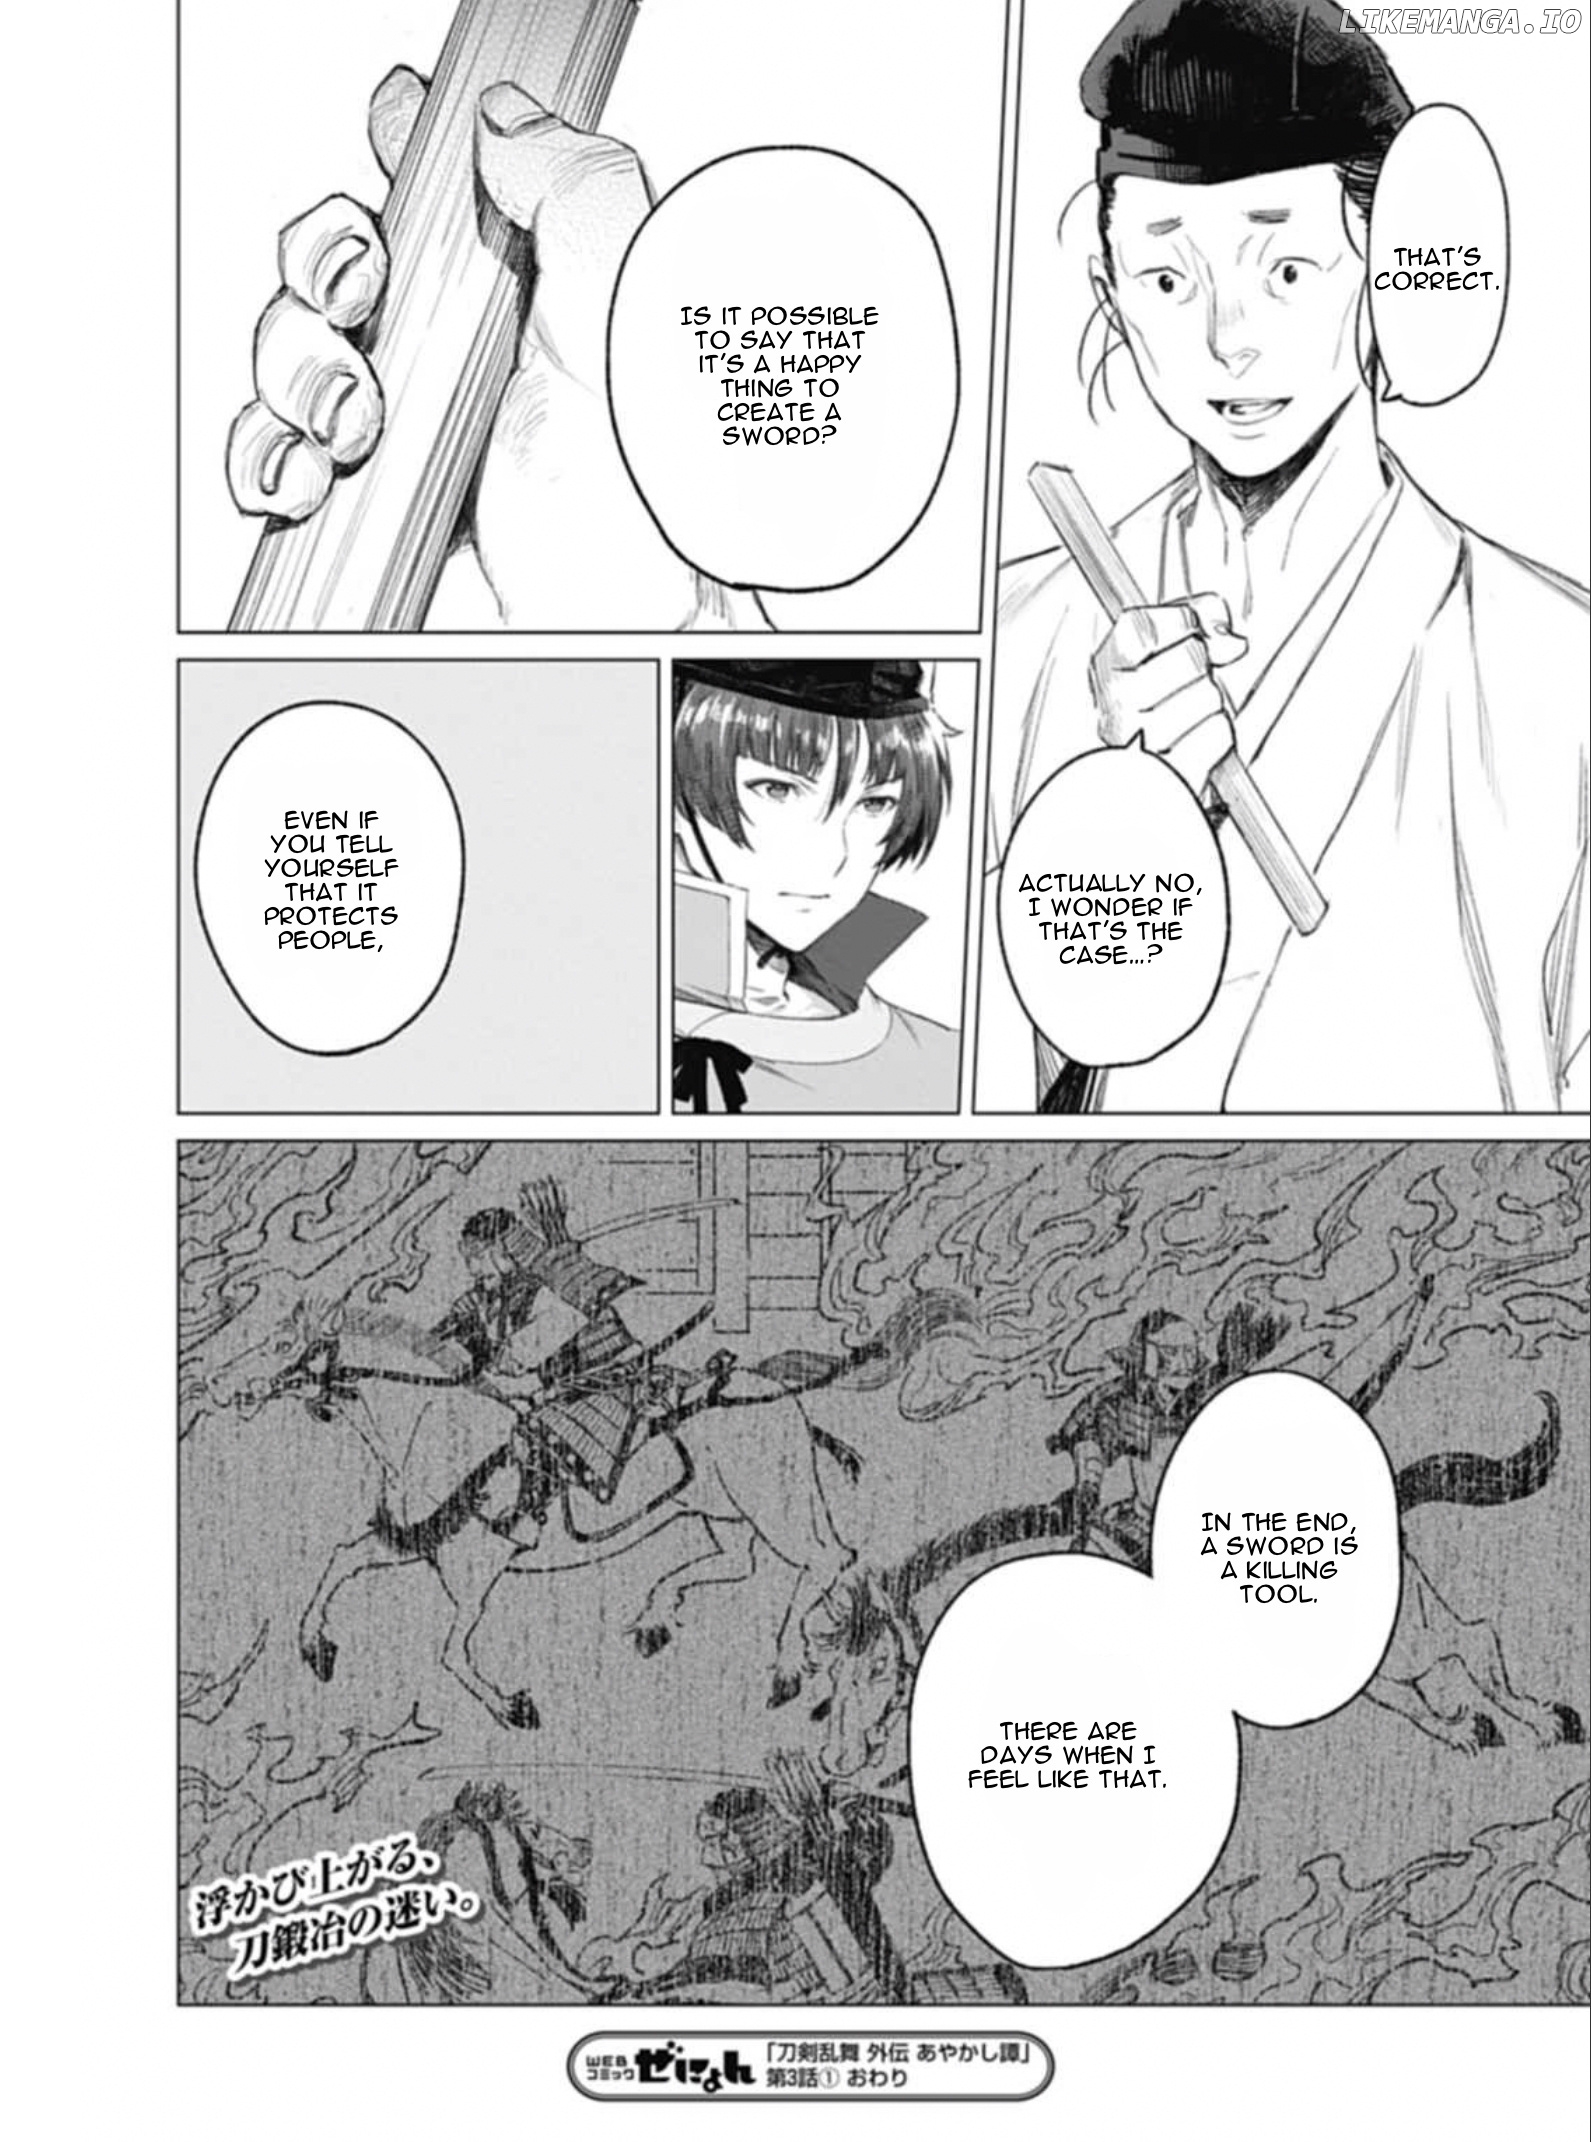 Touken Ranbu Side Story: Tale of Ayakashi chapter 3 - page 14